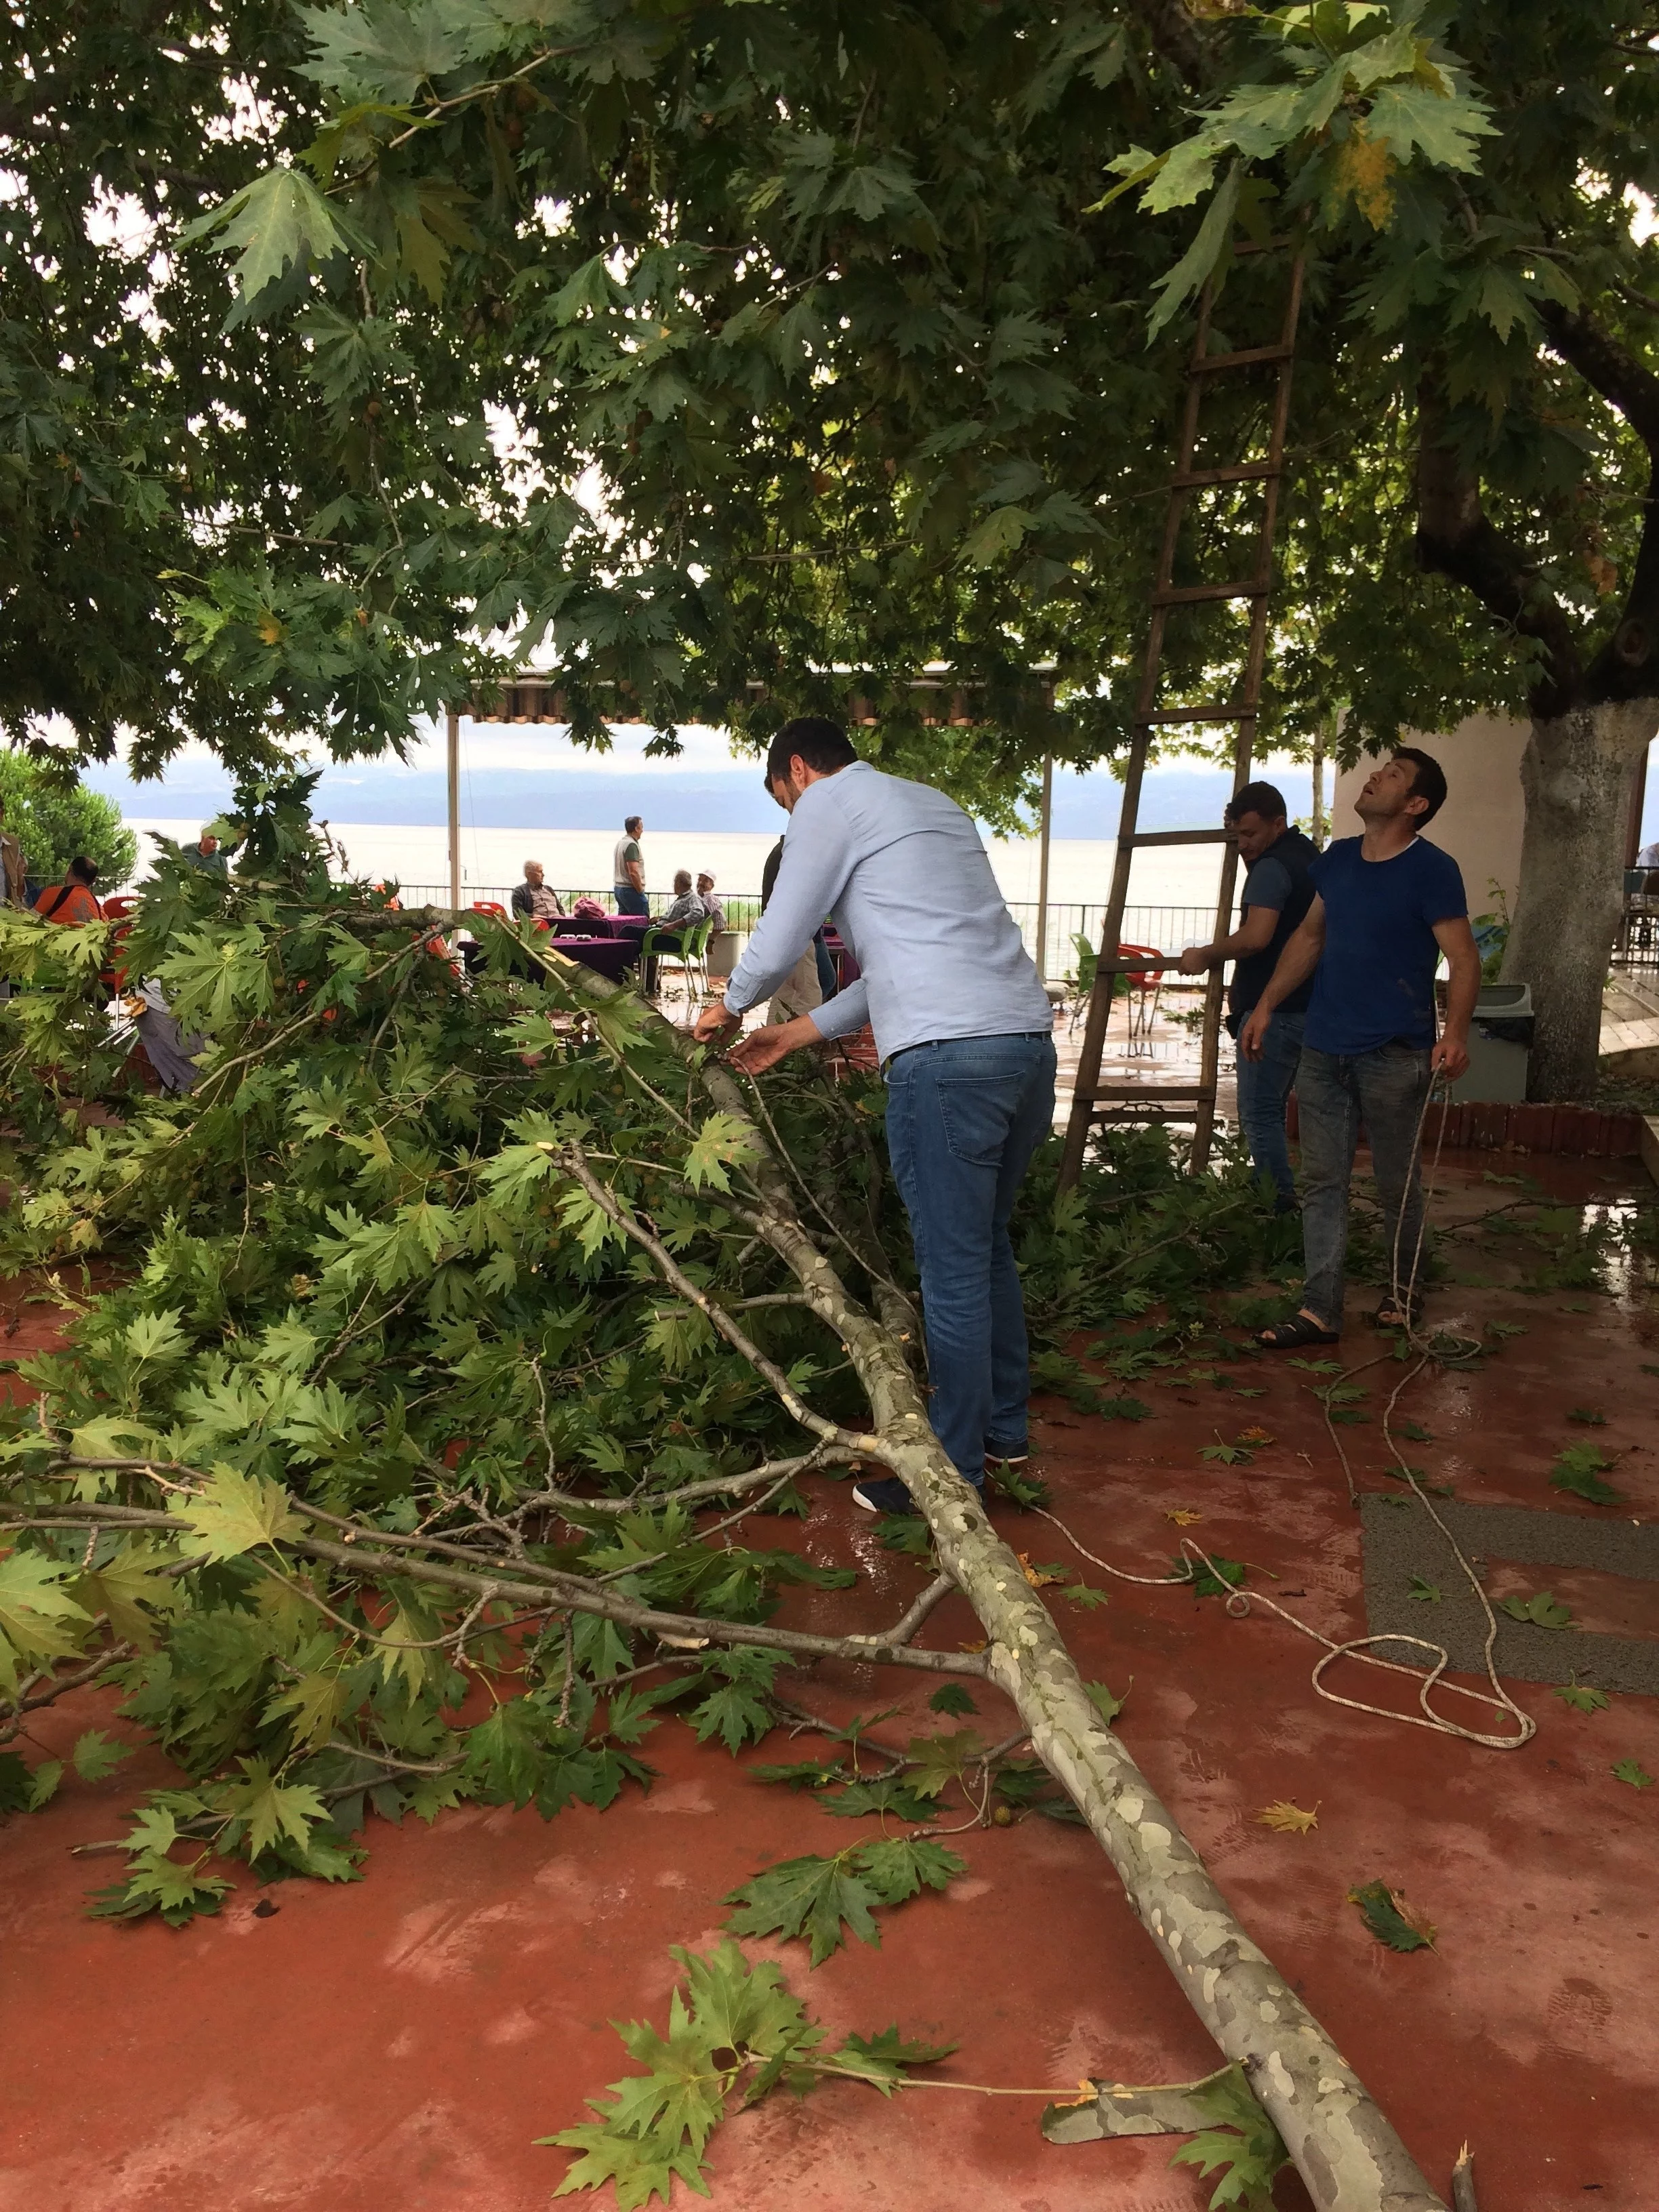 Bursa'da fırtına ağaçları devirdi